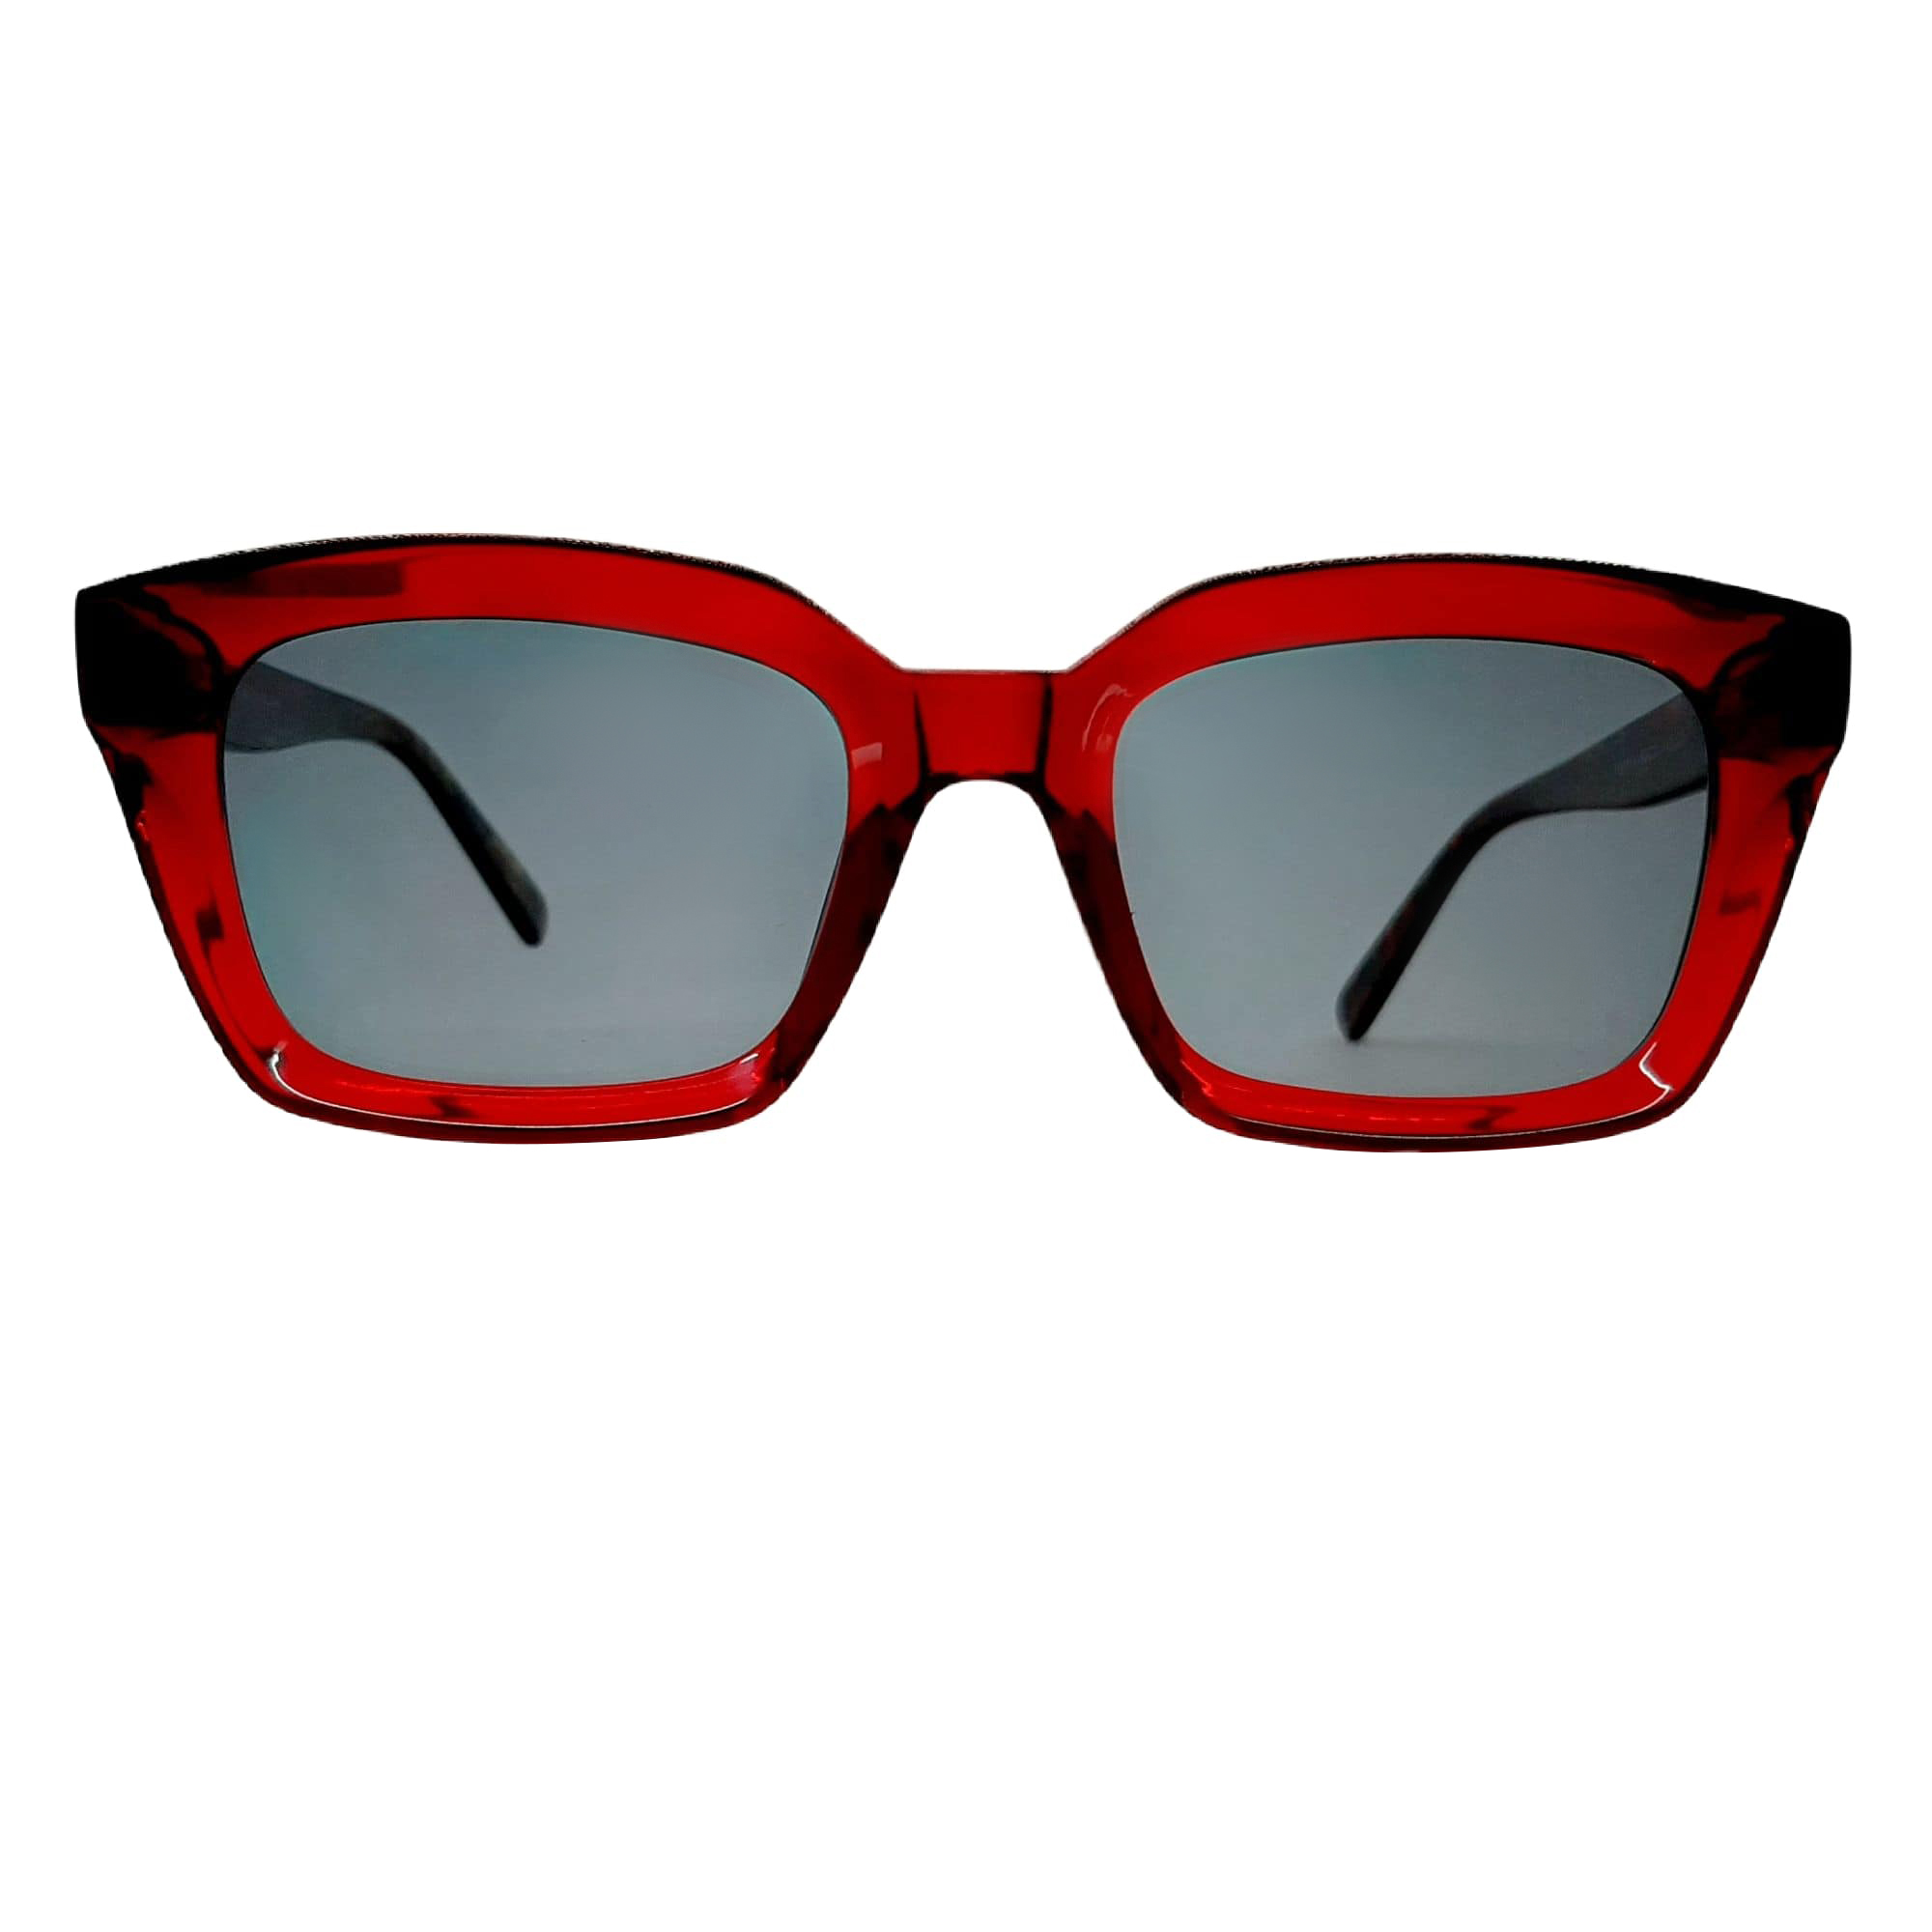 عینک آفتابی پاواروتی مدل FG6016c4